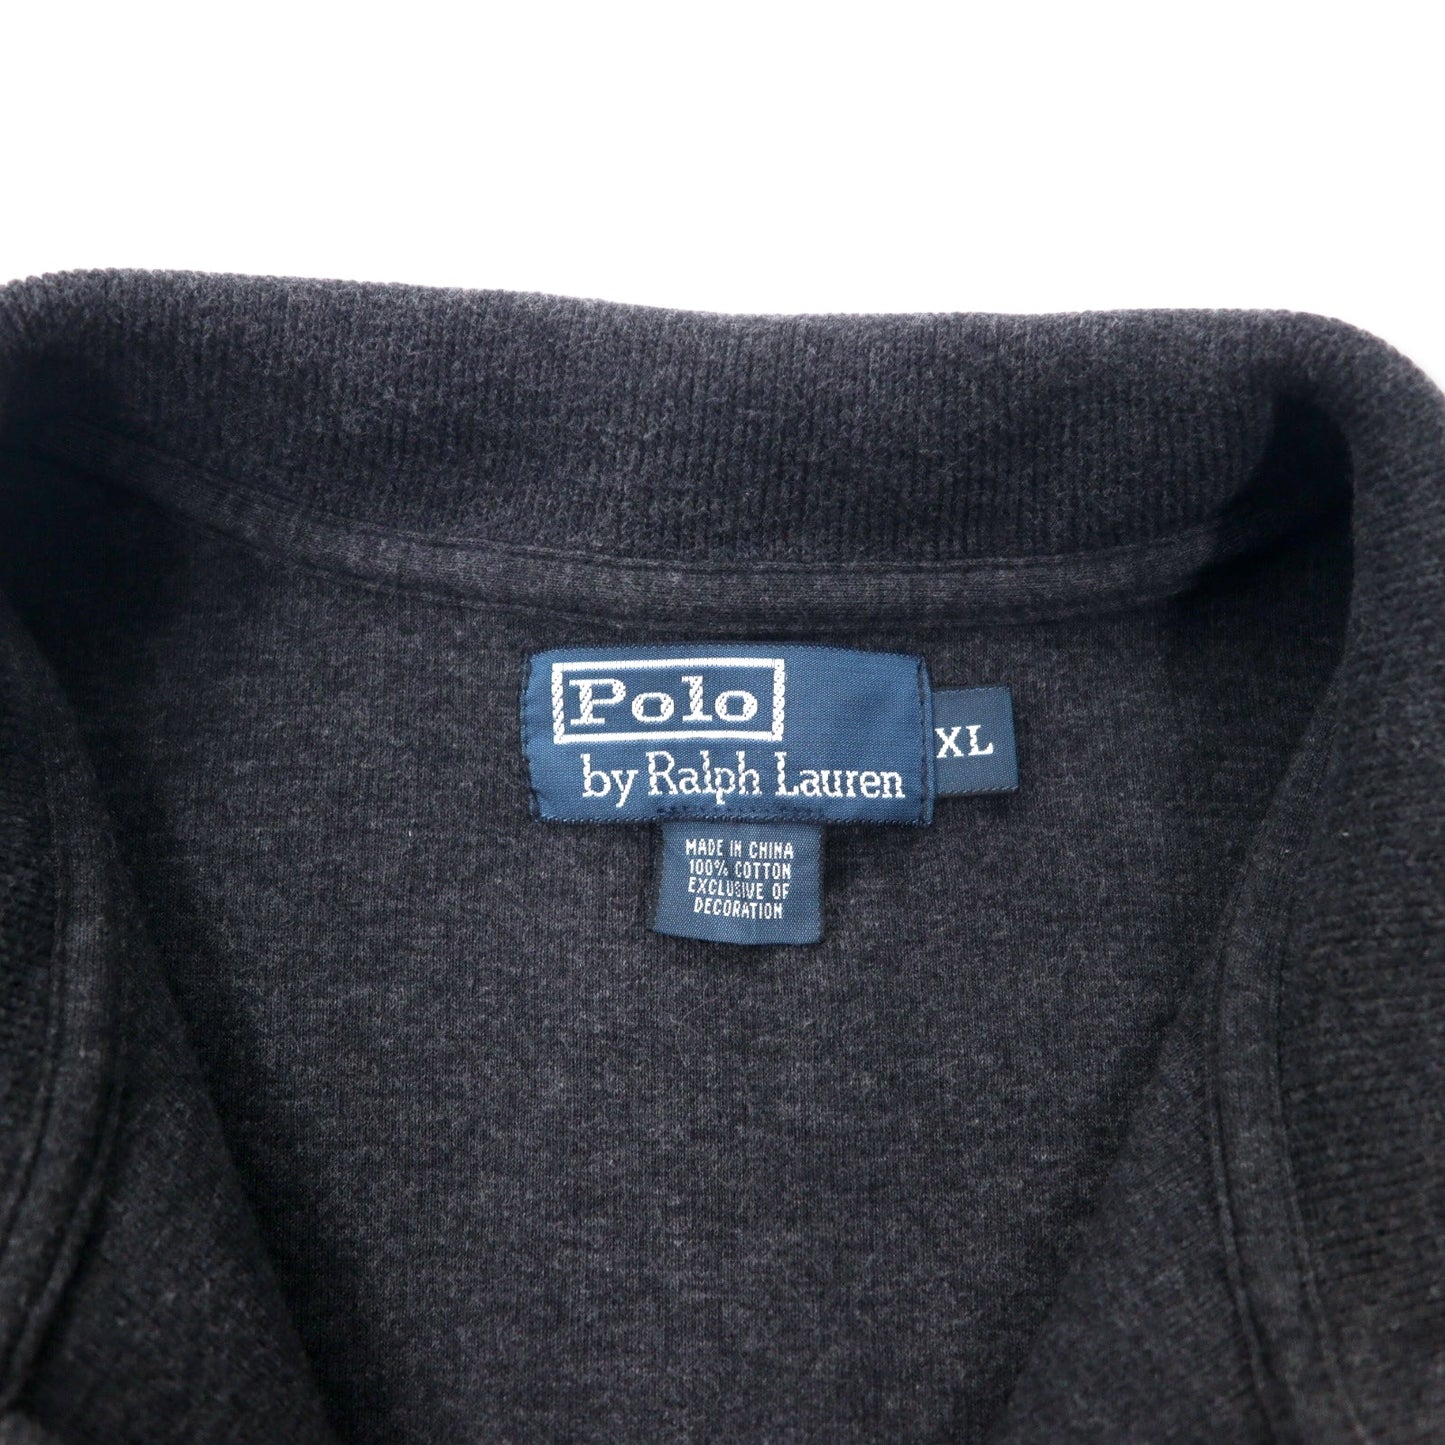 Polo by Ralph Lauren ハーフジップ スウェット XL グレー コットン スモールポニー刺繍 ビッグサイズ